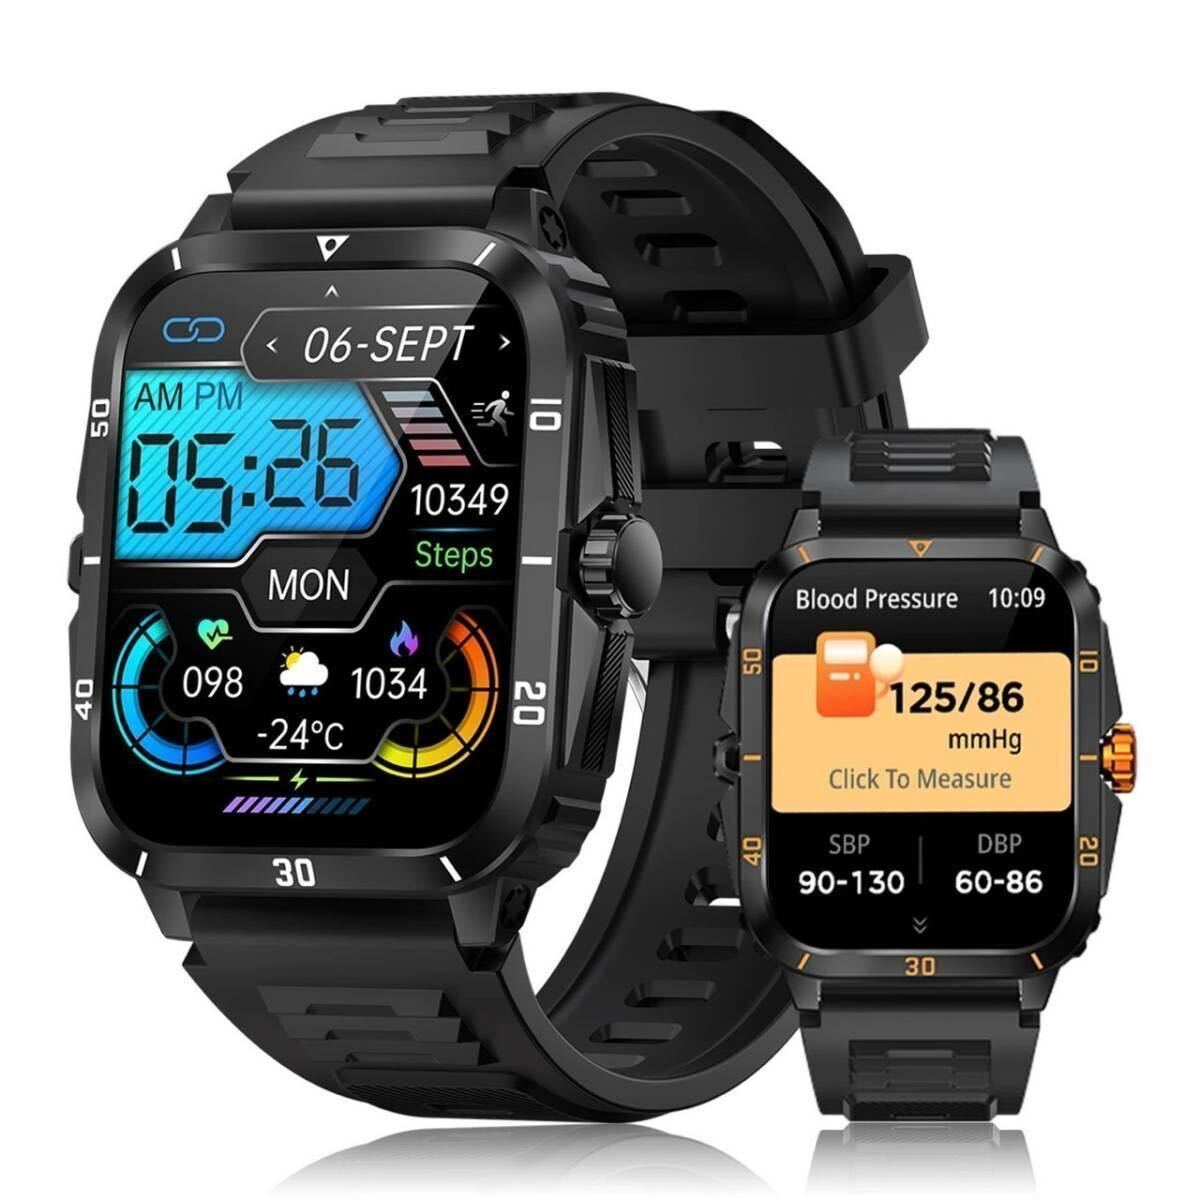 【即納】最新 新品 スマートウォッチ オレンジ ラバー ベルト 腕時計 防水 健康管理 軍用規格デザイン 通話機能付き Android iPhone対応の画像1